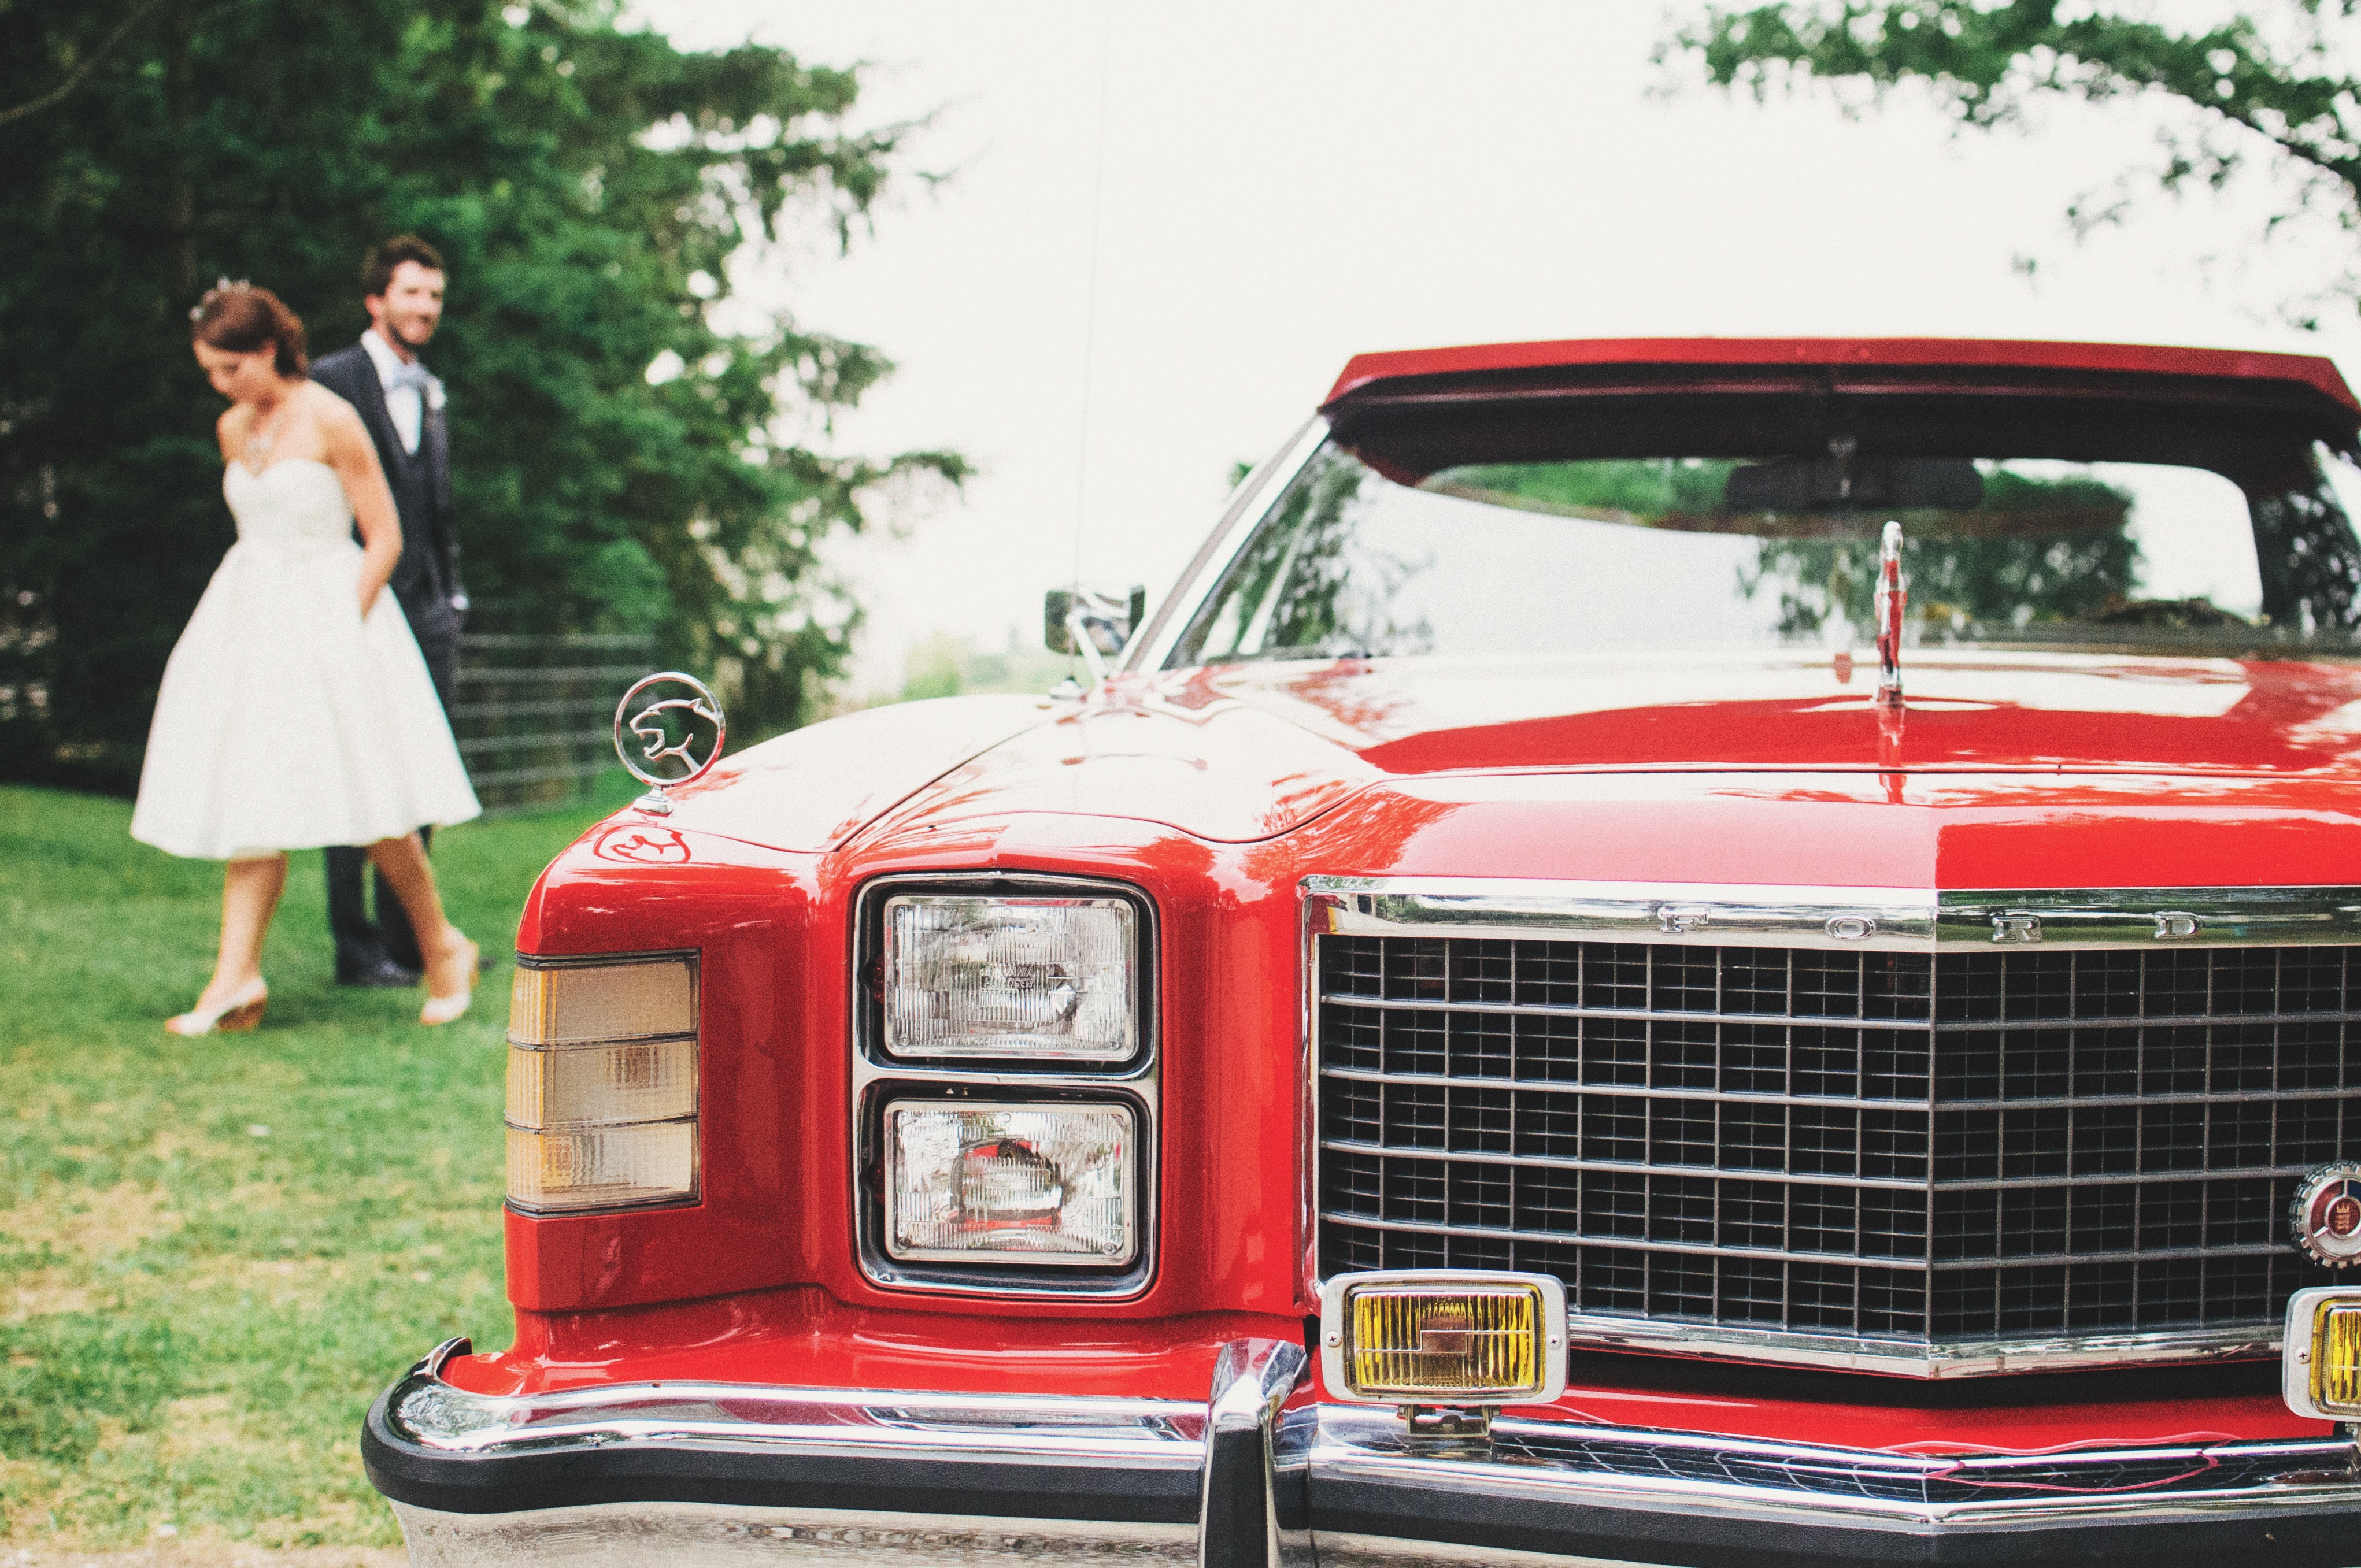 Eine Braut und ein Bräutigam stehen neben einem roten Auto.